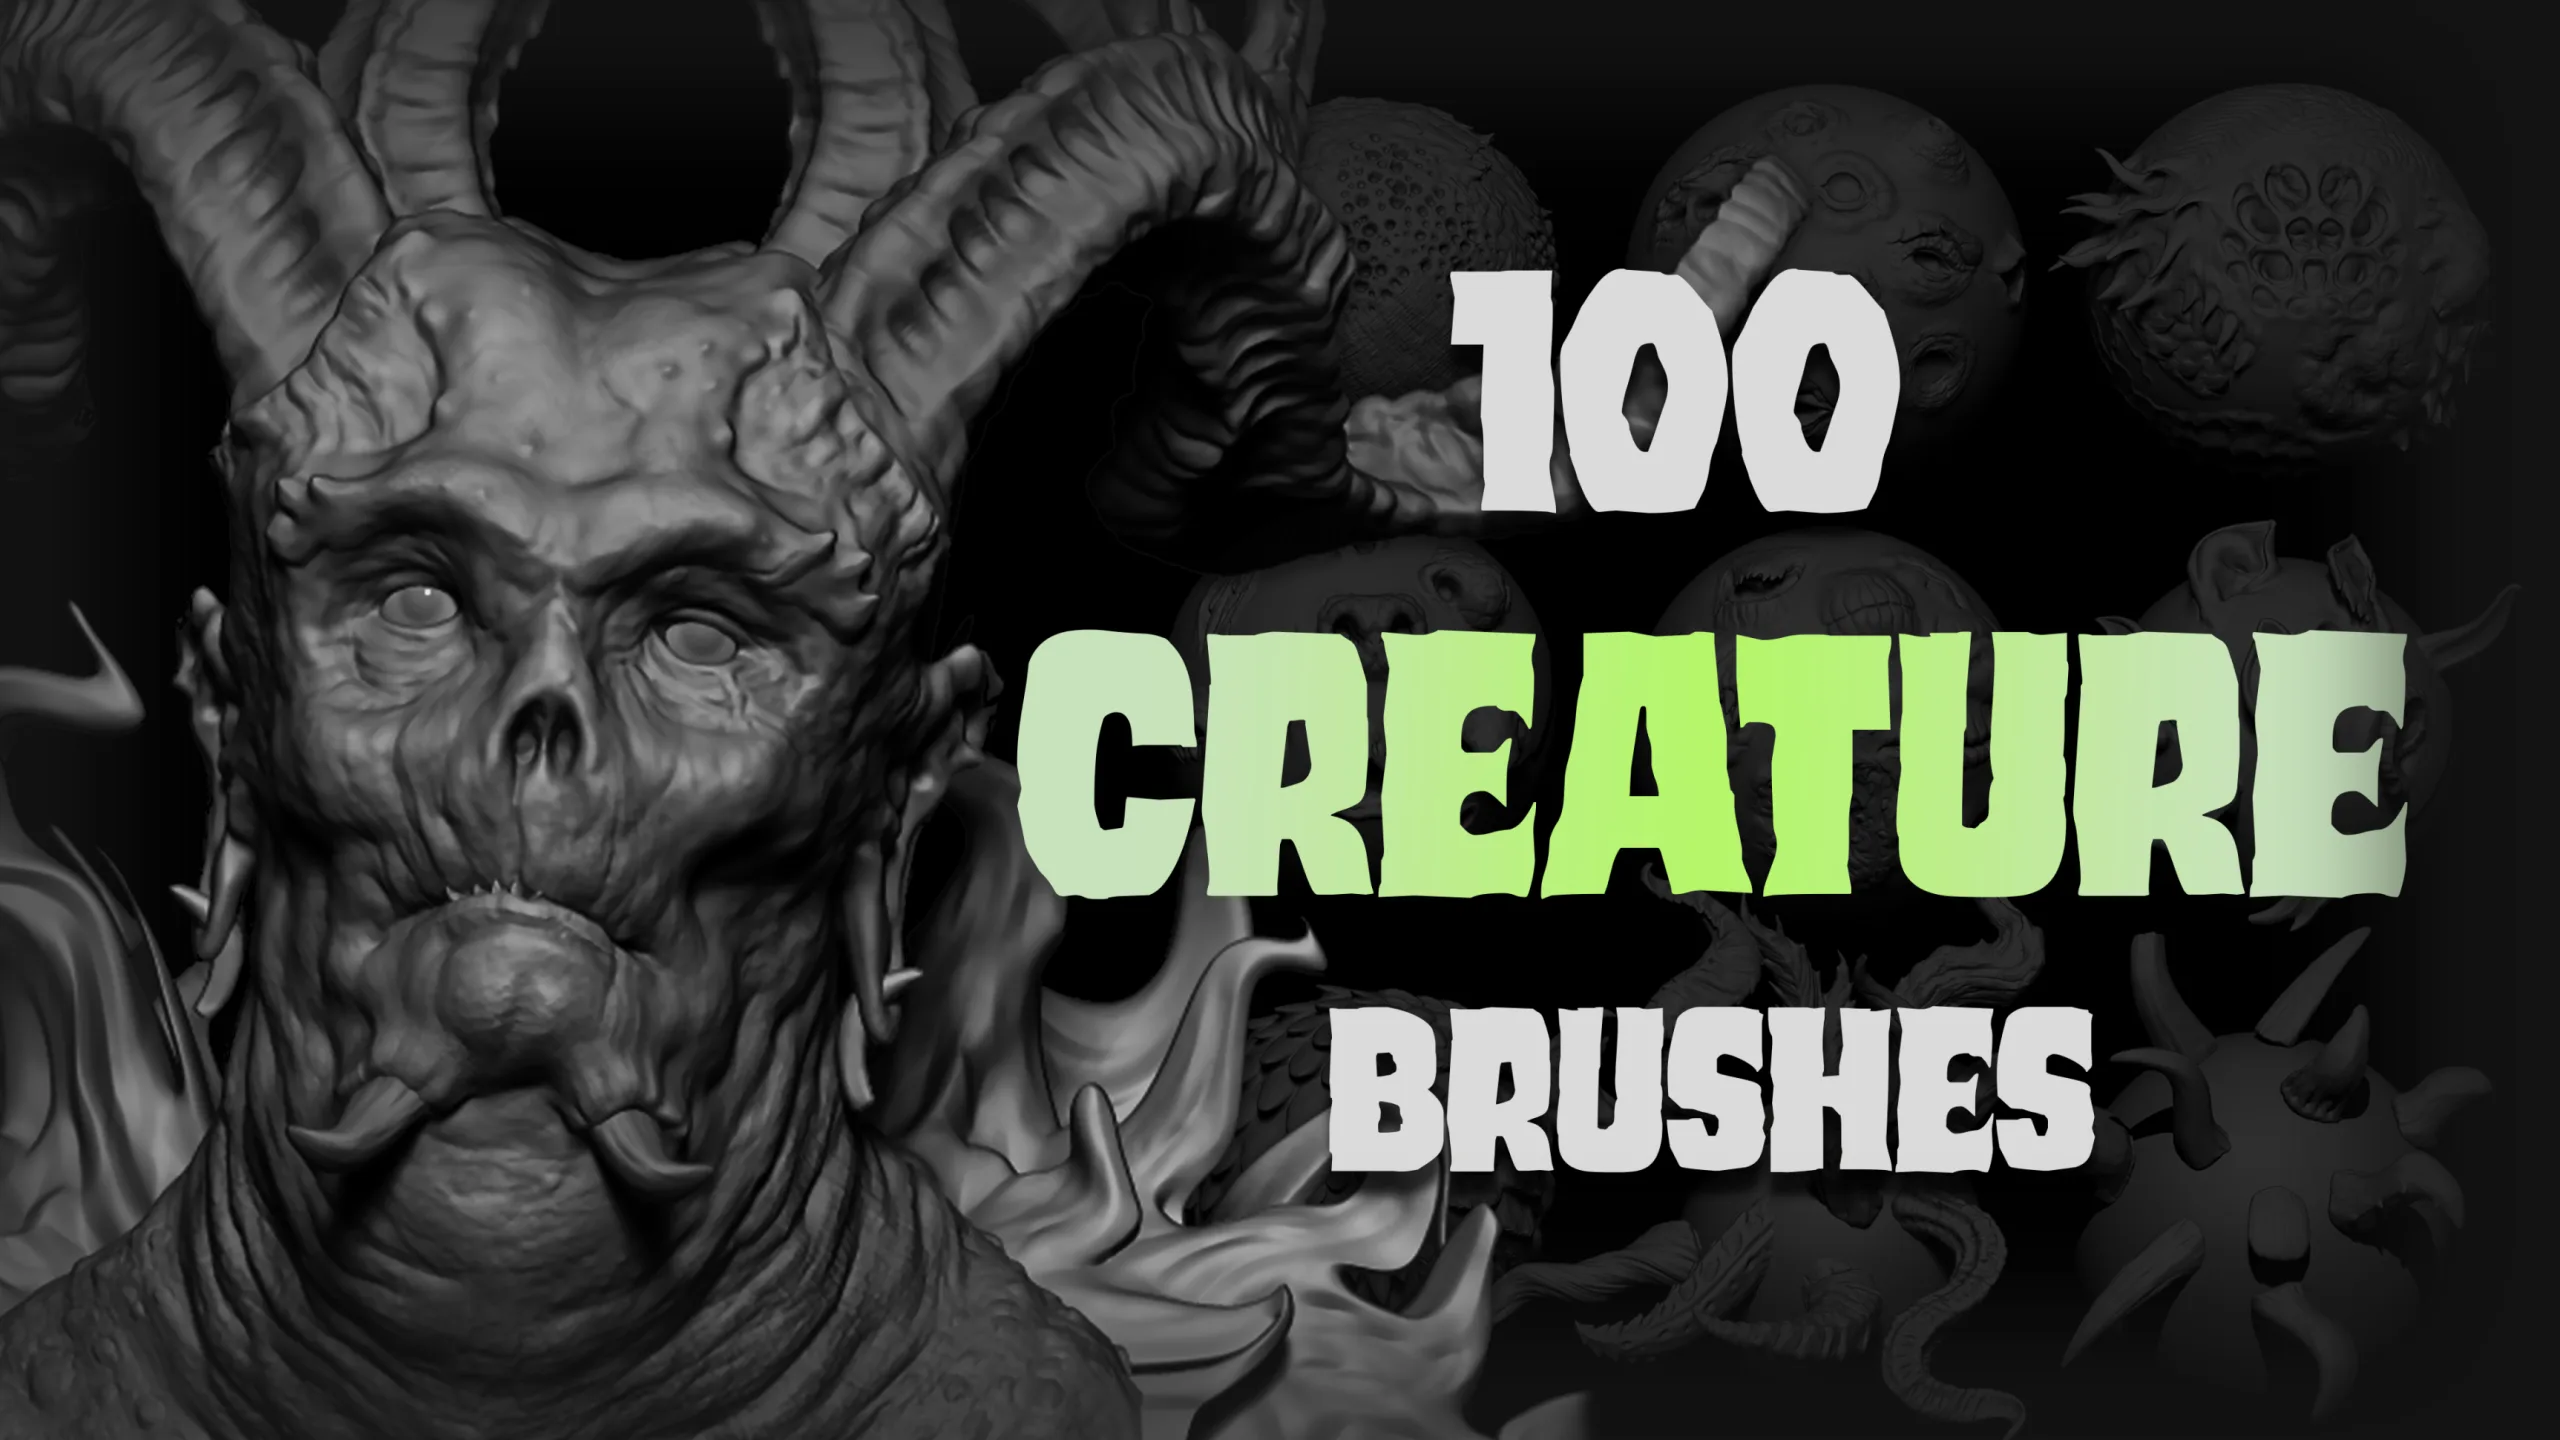 Zbrush + Blender - 100 Creature IMM and VDM Brush Mega Pack